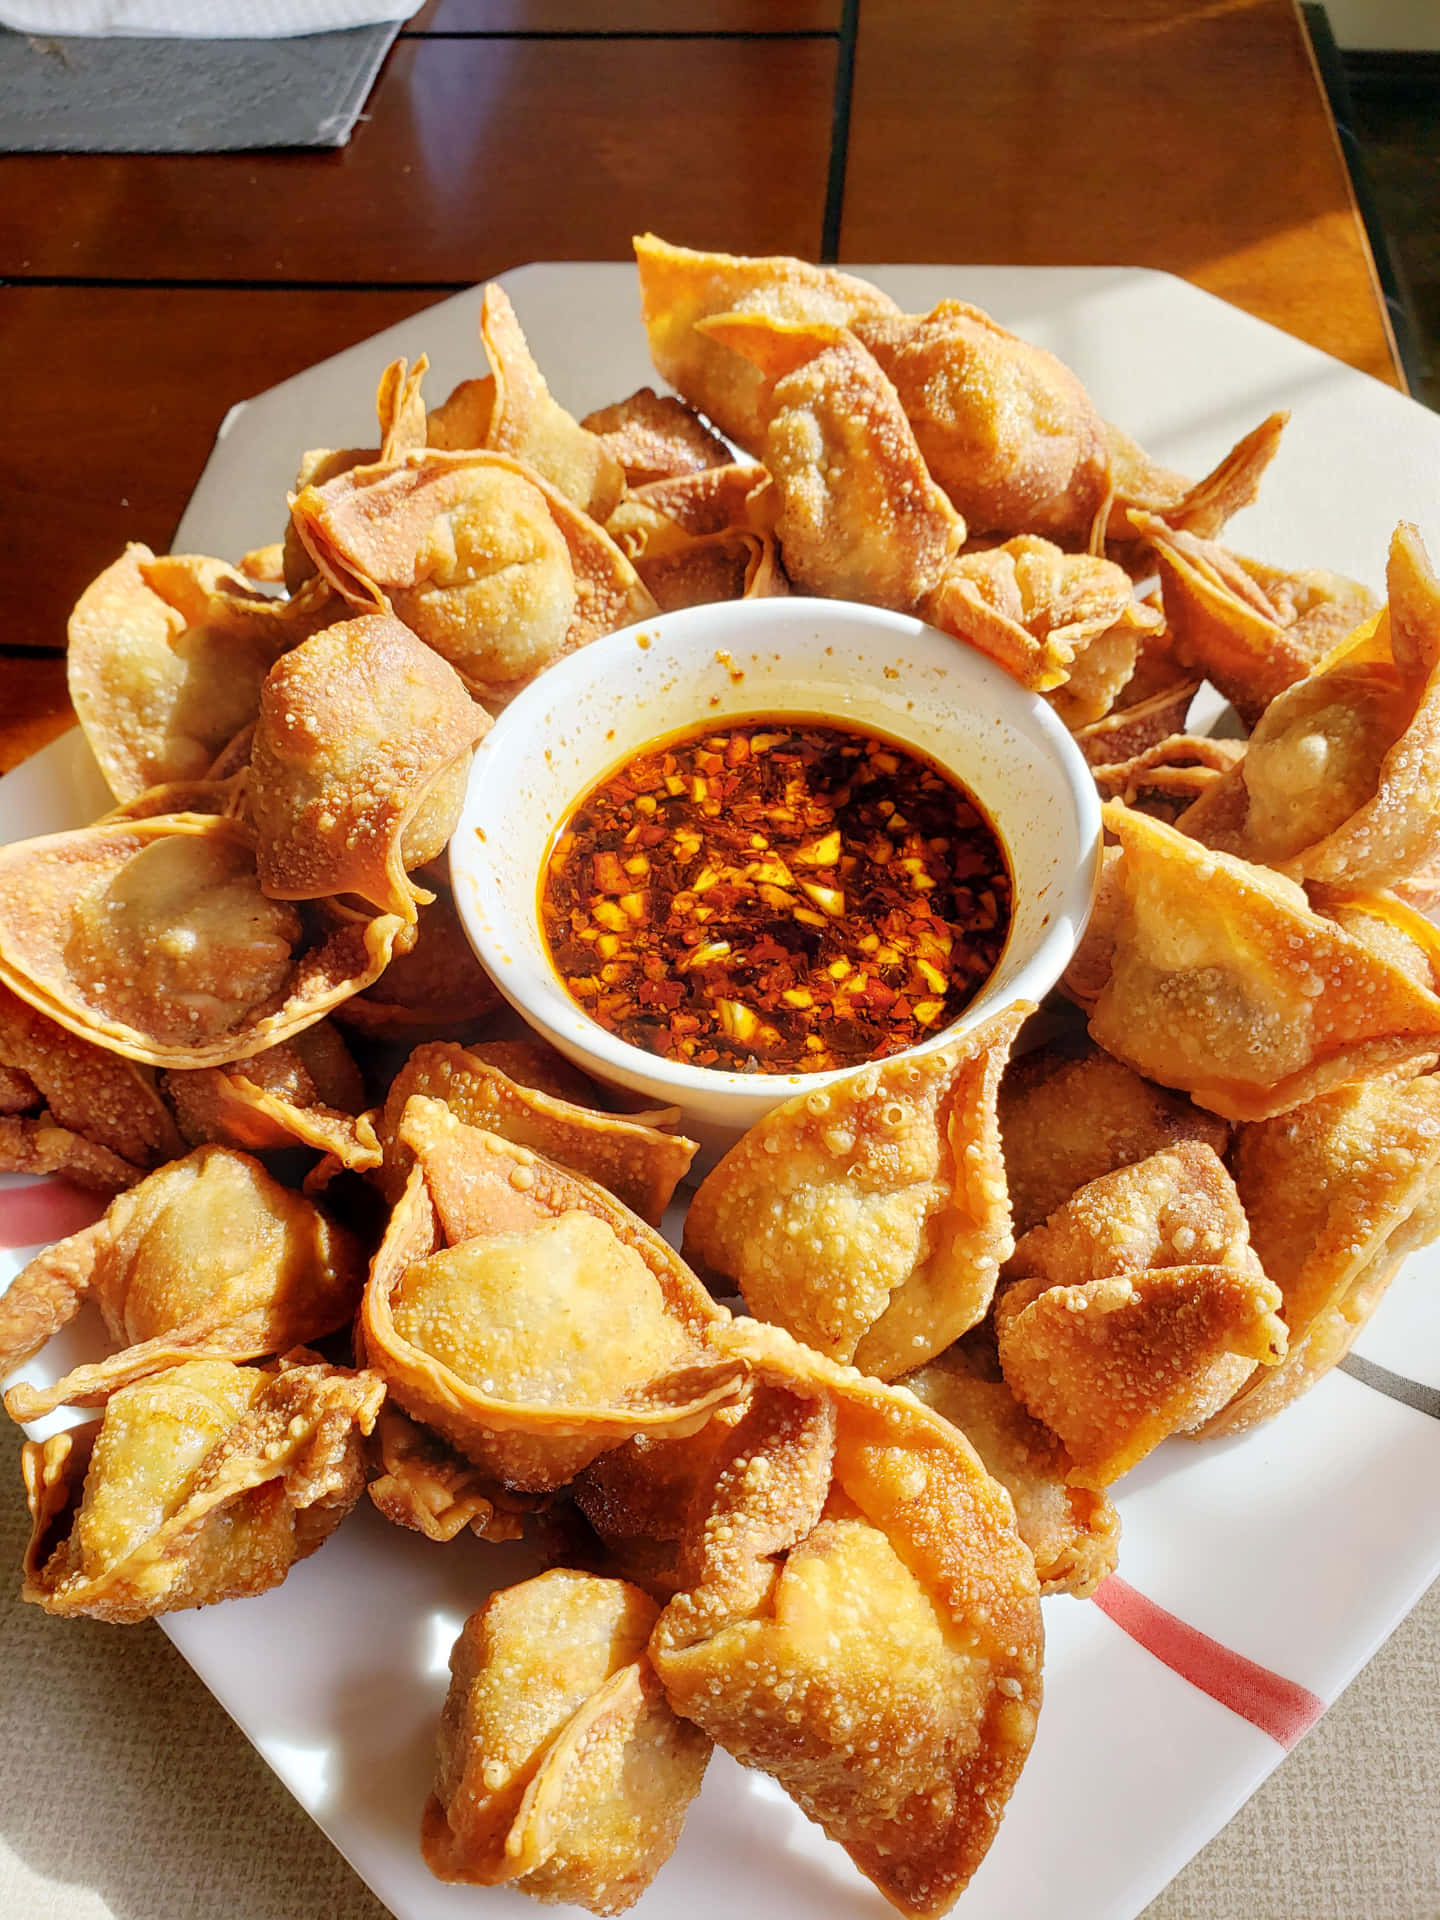 A Plate Of Fried Dumplings